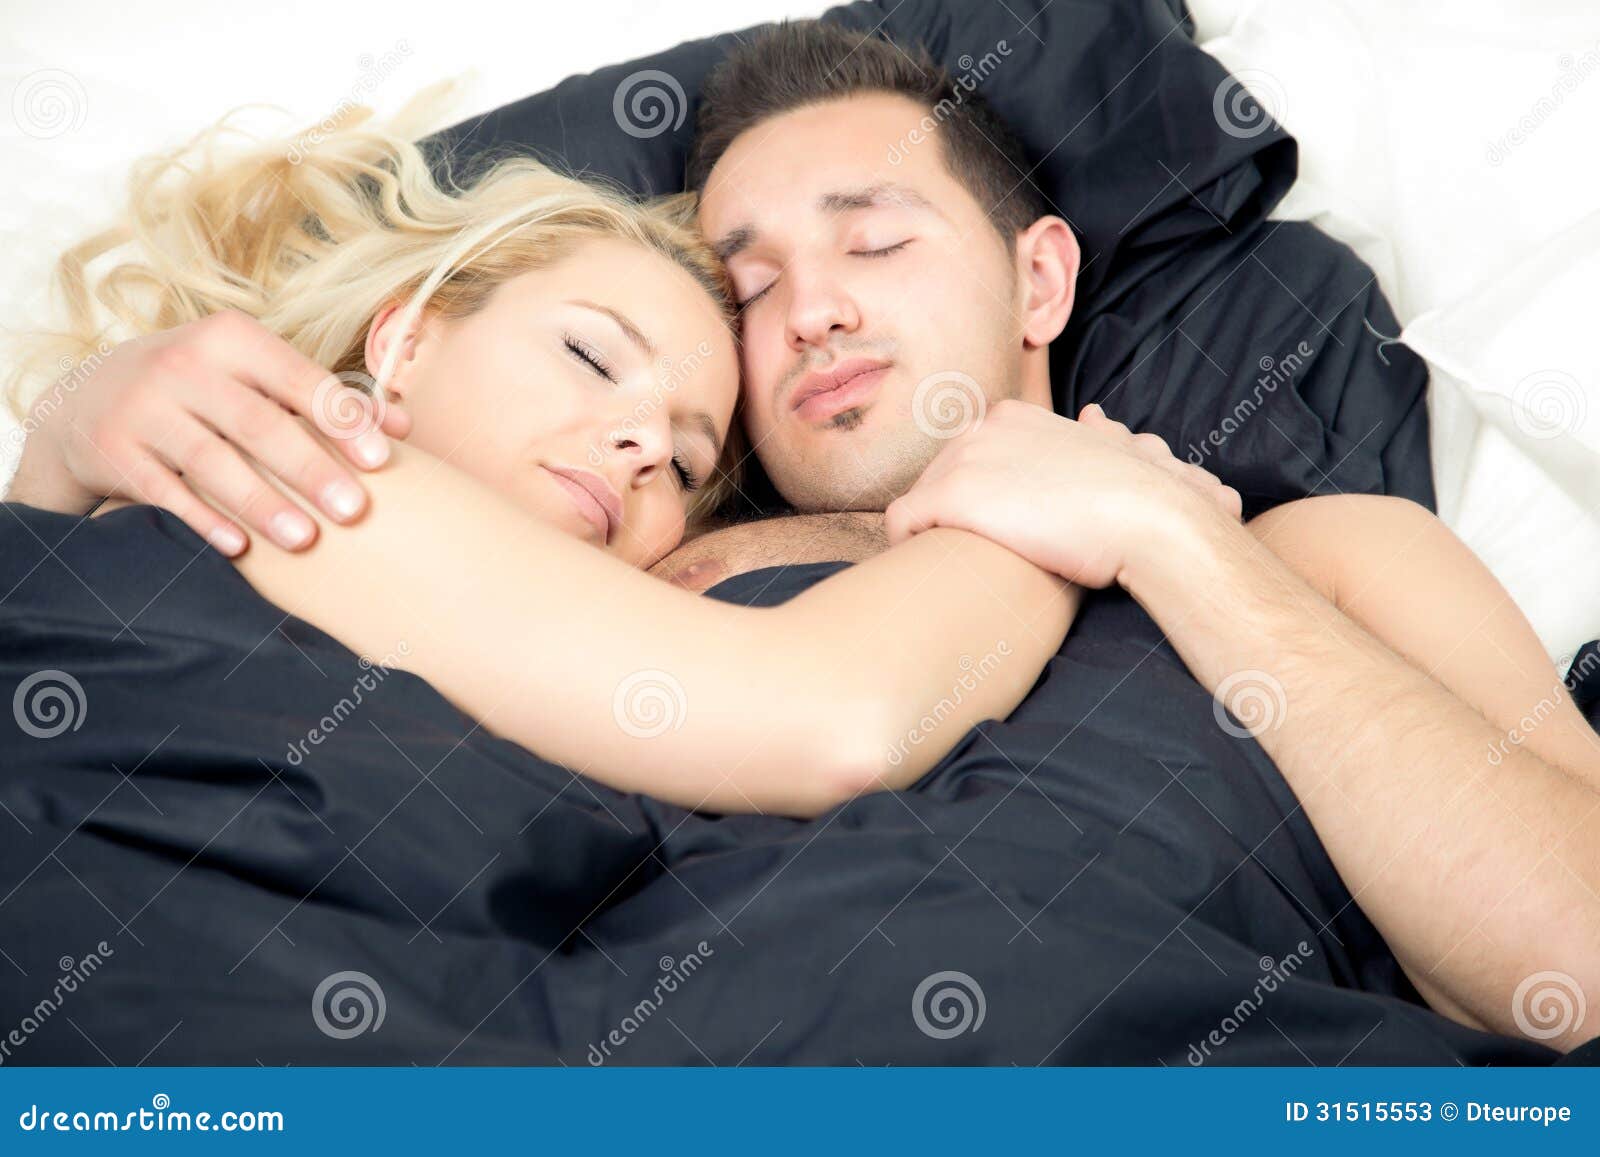 Affectionate Couple Enjoying A Blissful Sleep Stock Image Image Of Entwined Cuddling 31515553